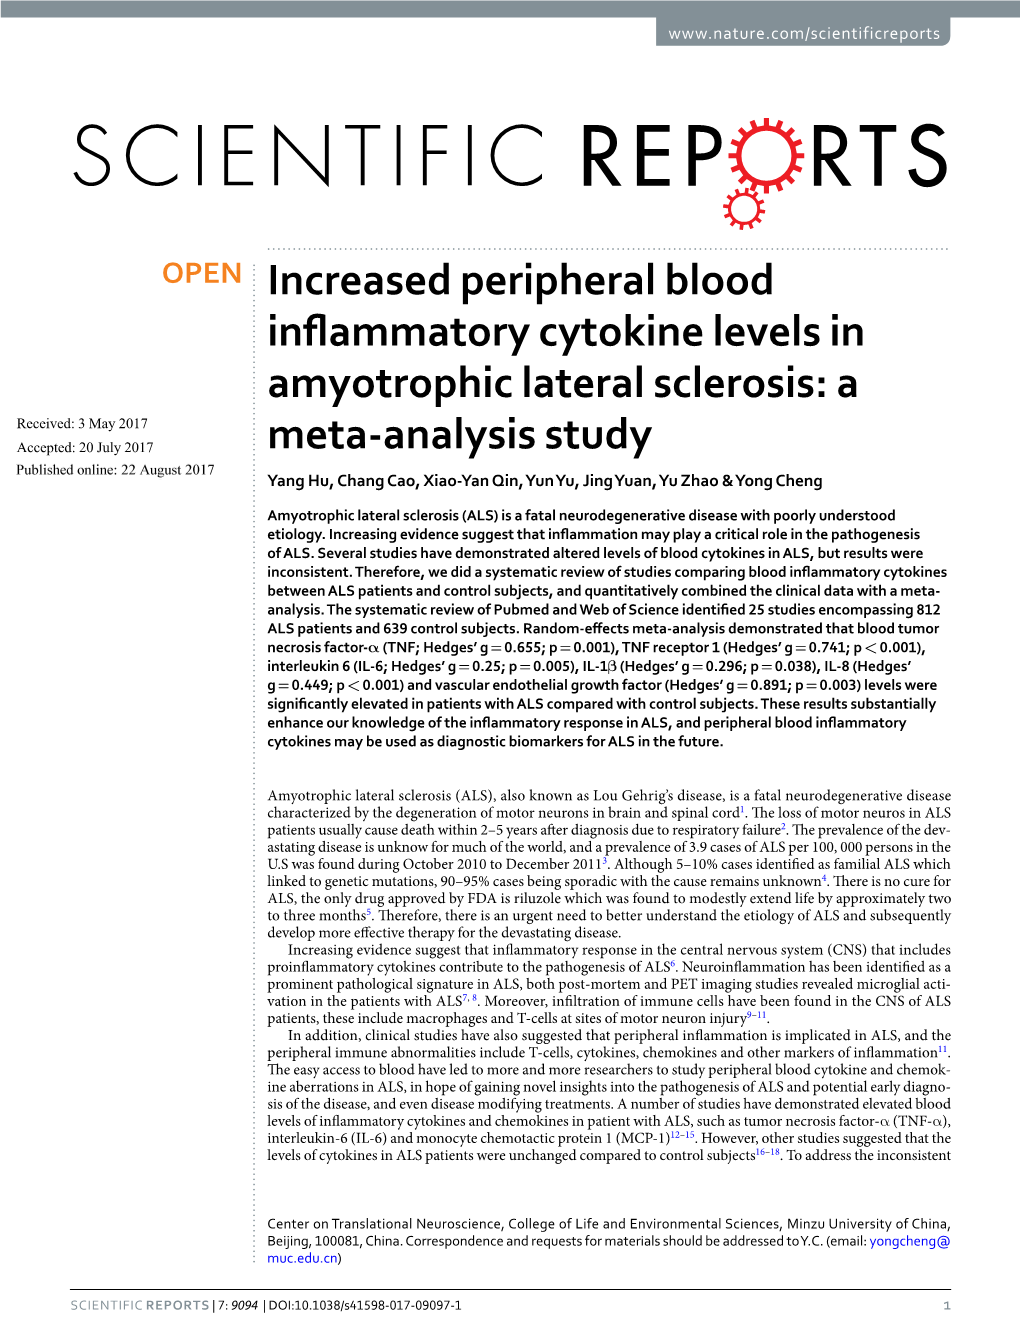 Increased Peripheral Blood Inflammatory Cytokine Levels In